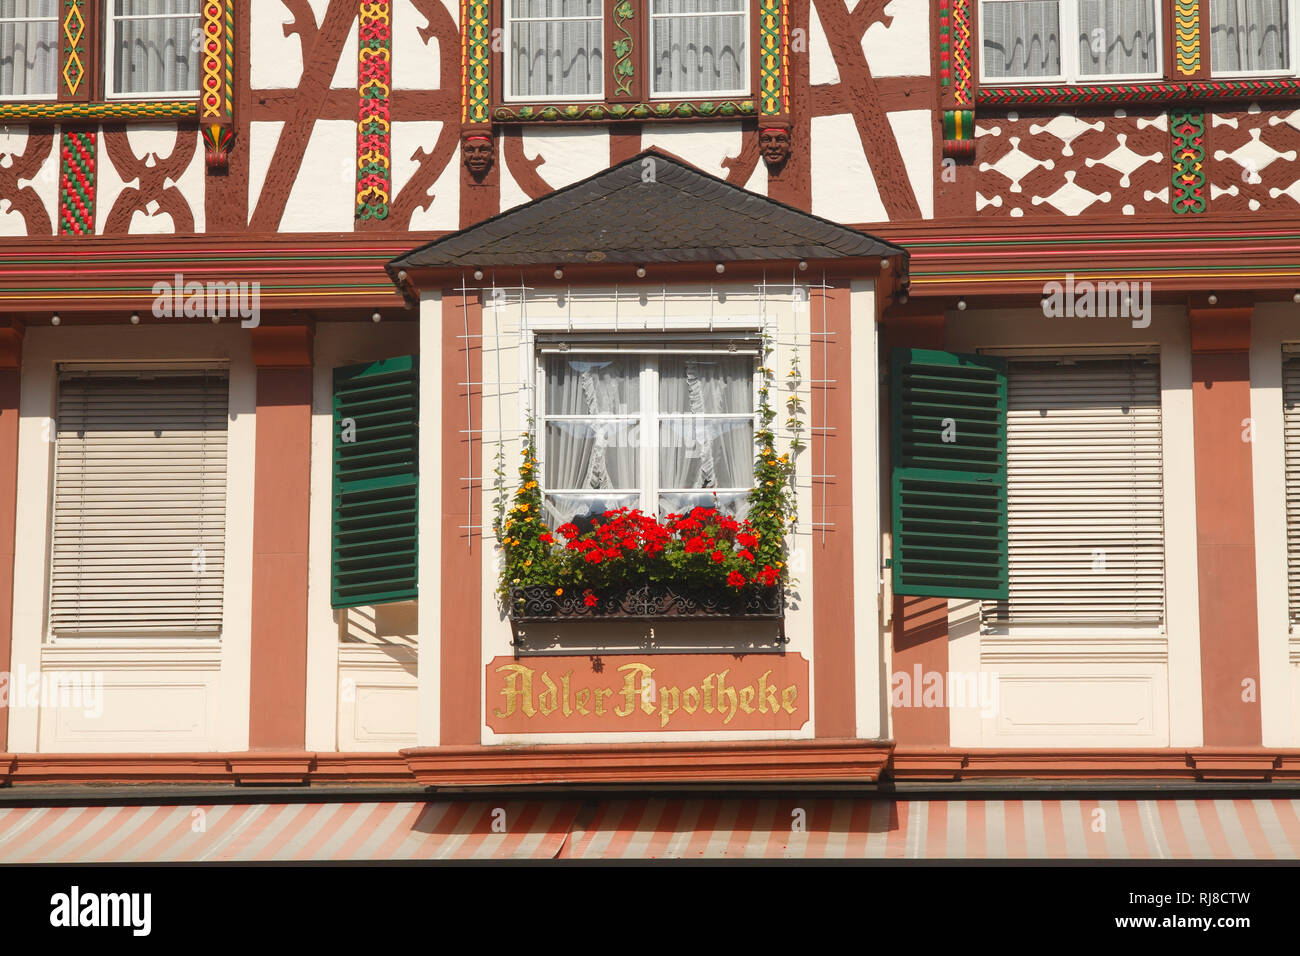 Adlerapotheke, Fenster, Marktplatz mit Fachwerkhaus in der Altstadt von  Bernkastel, Bernkastel-Kues, Rheinland-Pfalz, Deutschland Photo Stock -  Alamy